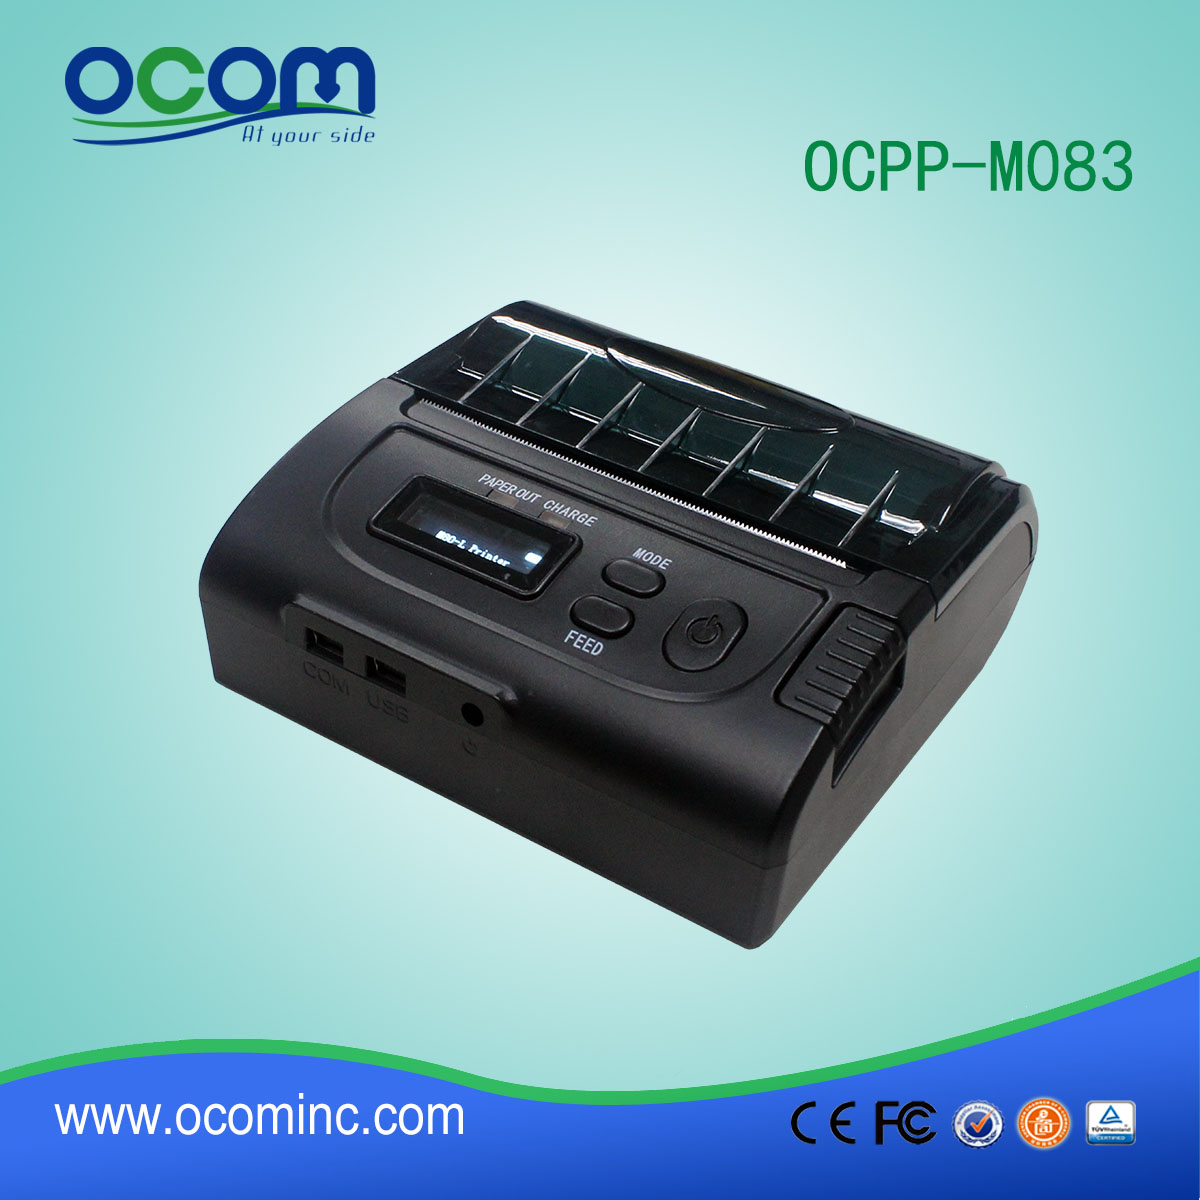 Άμεση θερμική OCPP-M083 android φορητό εκτυπωτή usb θερμικό εκτυπωτή